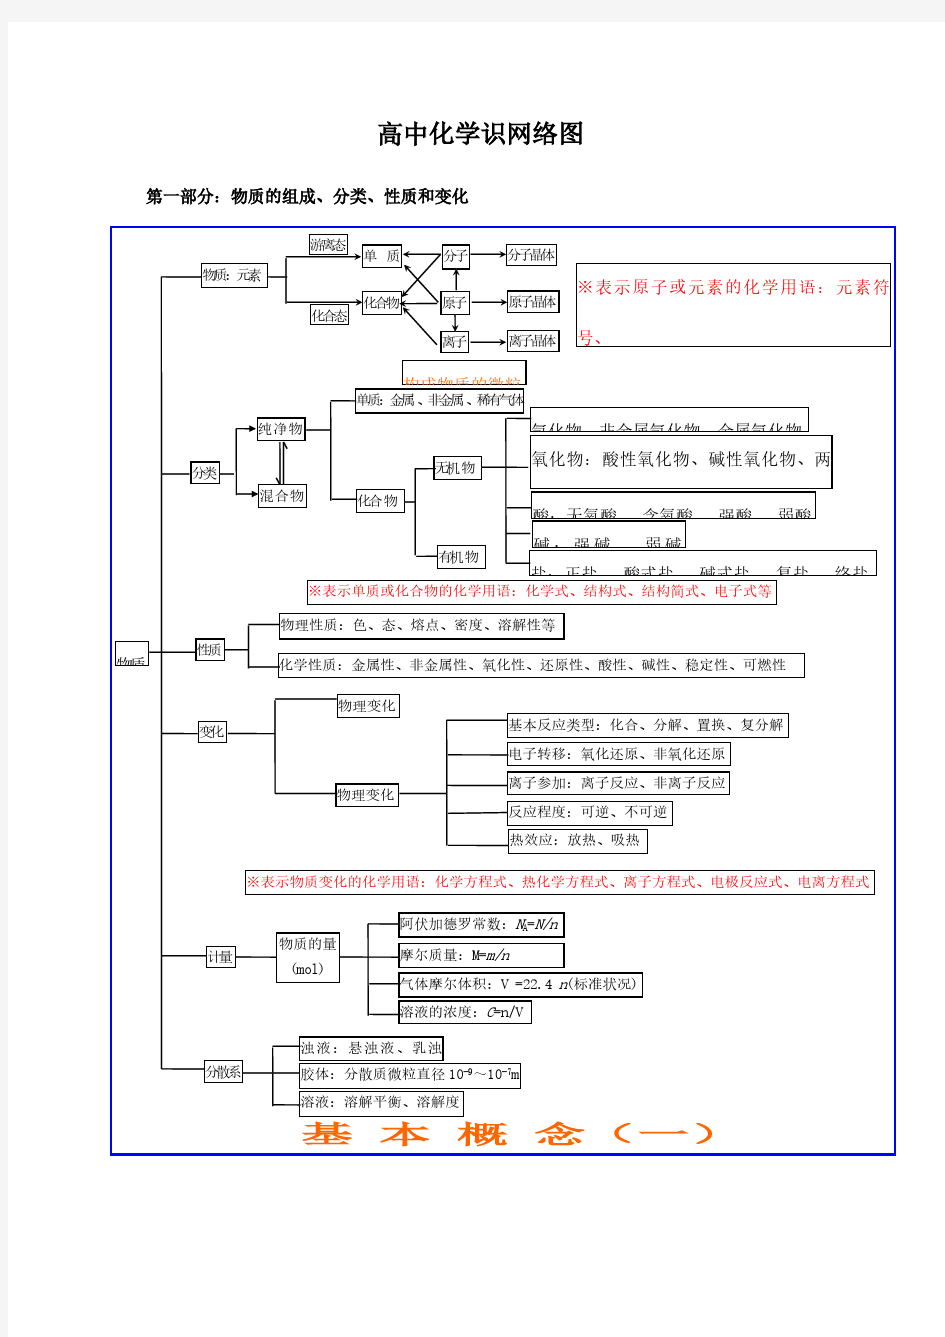 高中化学基础知识网络结构图(完整版)